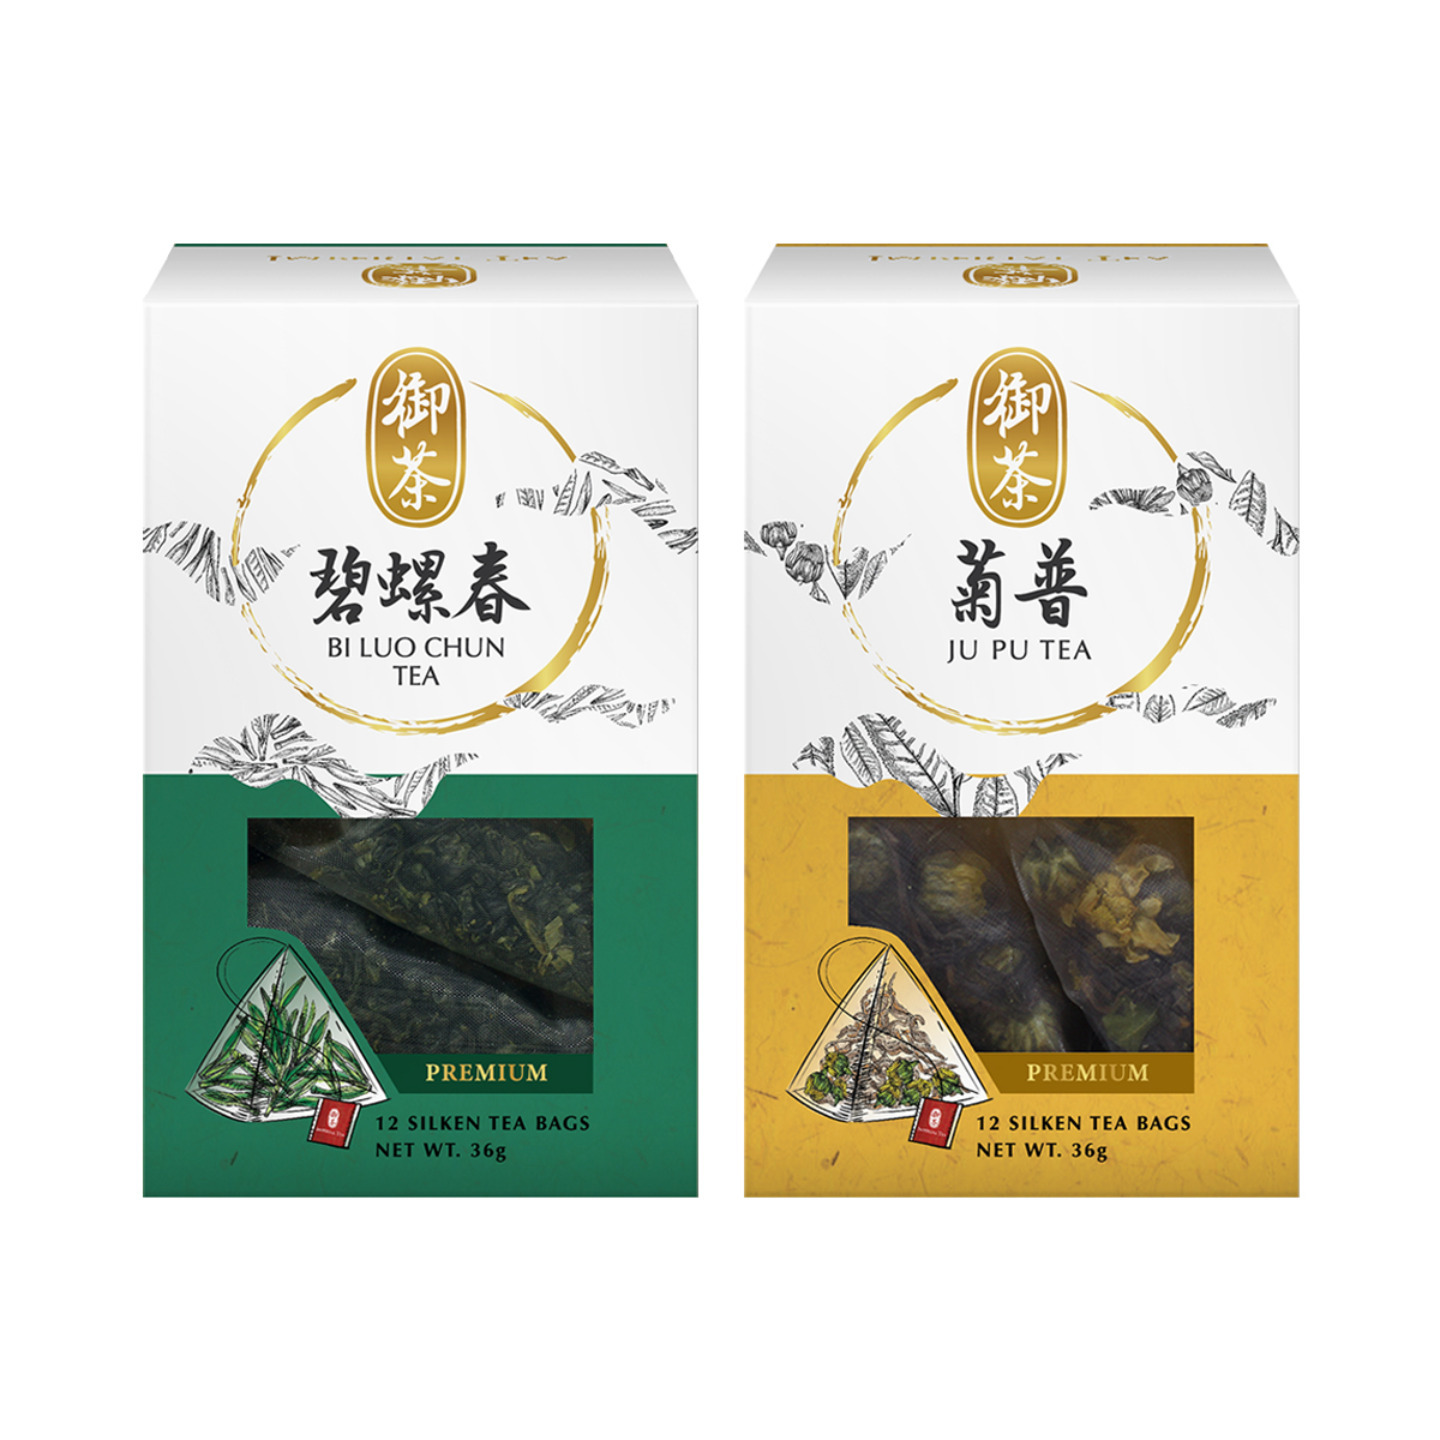 Imperial Bi Luo Chun & Ju Pu Tea Bundle of 2